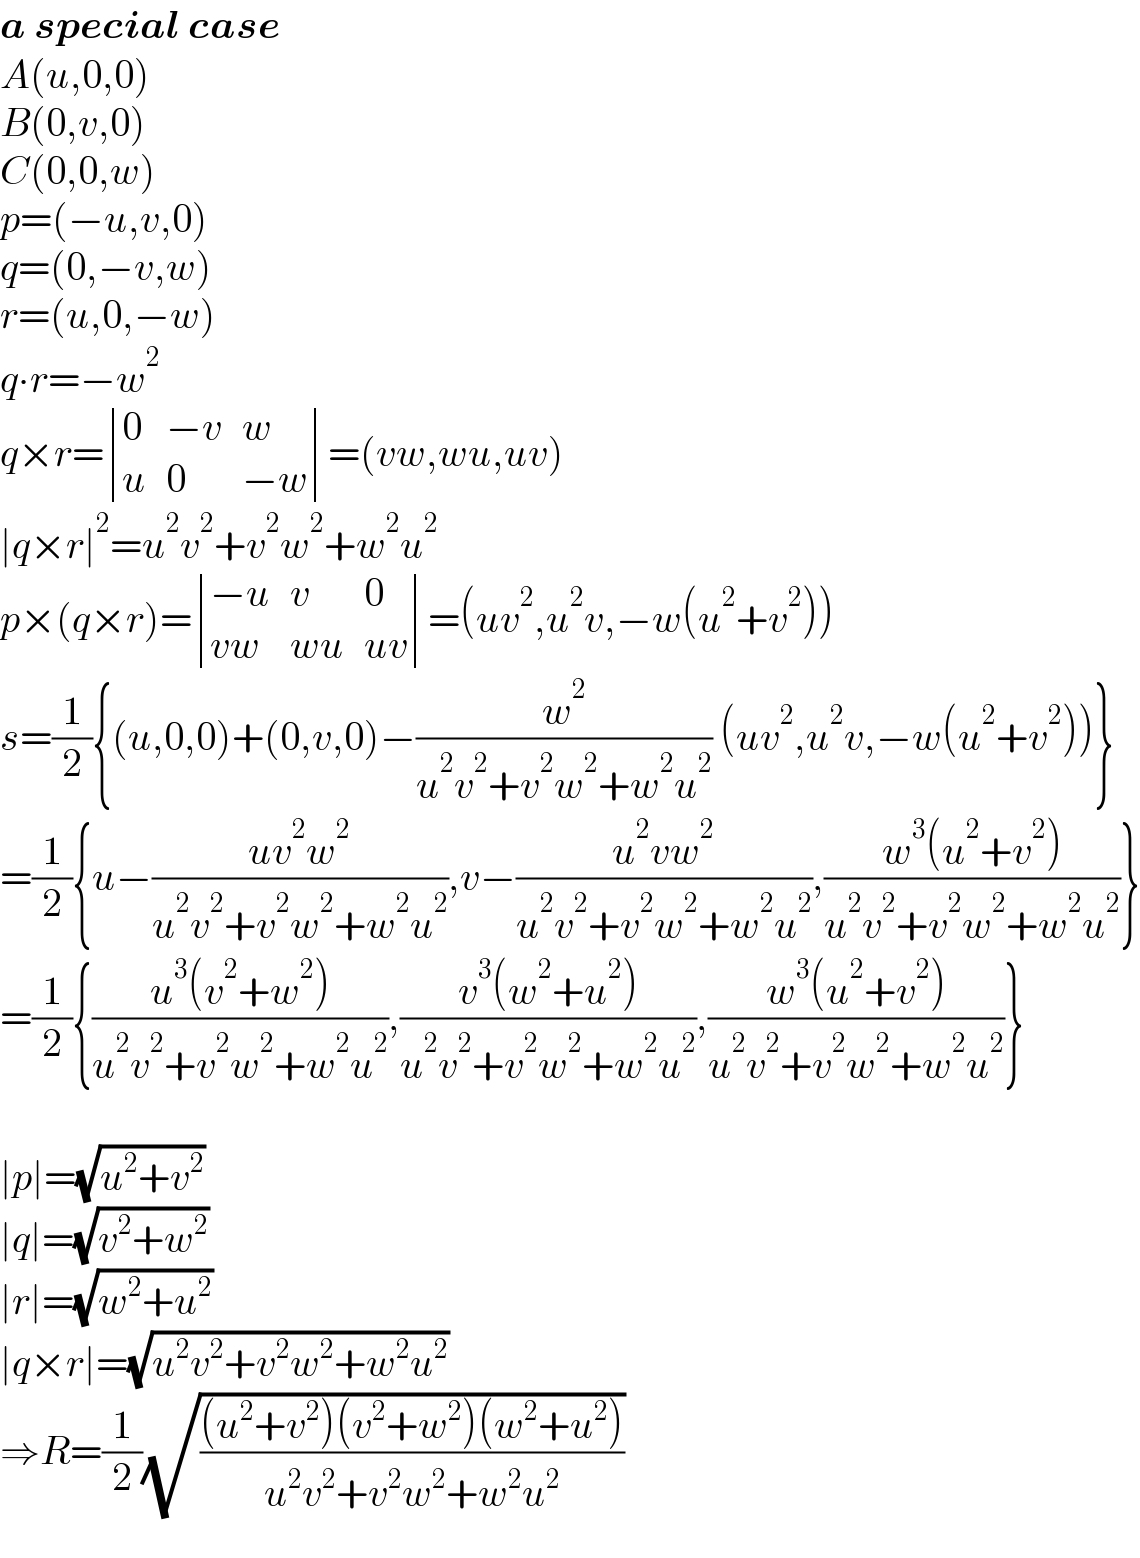 a special case  A(u,0,0)  B(0,v,0)  C(0,0,w)  p=(−u,v,0)  q=(0,−v,w)  r=(u,0,−w)  q∙r=−w^2   q×r= determinant ((0,(−v),w),(u,0,(−w)))=(vw,wu,uv)  ∣q×r∣^2 =u^2 v^2 +v^2 w^2 +w^2 u^2   p×(q×r)= determinant (((−u),v,0),((vw),(wu),(uv)))=(uv^2 ,u^2 v,−w(u^2 +v^2 ))  s=(1/2){(u,0,0)+(0,v,0)−(w^2 /(u^2 v^2 +v^2 w^2 +w^2 u^2 )) (uv^2 ,u^2 v,−w(u^2 +v^2 ))}  =(1/2){u−((uv^2 w^2 )/(u^2 v^2 +v^2 w^2 +w^2 u^2 )),v−((u^2 vw^2 )/(u^2 v^2 +v^2 w^2 +w^2 u^2 )),((w^3 (u^2 +v^2 ))/(u^2 v^2 +v^2 w^2 +w^2 u^2 ))}  =(1/2){((u^3 (v^2 +w^2 ))/(u^2 v^2 +v^2 w^2 +w^2 u^2 )),((v^3 (w^2 +u^2 ))/(u^2 v^2 +v^2 w^2 +w^2 u^2 )),((w^3 (u^2 +v^2 ))/(u^2 v^2 +v^2 w^2 +w^2 u^2 ))}    ∣p∣=(√(u^2 +v^2 ))  ∣q∣=(√(v^2 +w^2 ))  ∣r∣=(√(w^2 +u^2 ))  ∣q×r∣=(√(u^2 v^2 +v^2 w^2 +w^2 u^2 ))  ⇒R=(1/2)(√(((u^2 +v^2 )(v^2 +w^2 )(w^2 +u^2 ))/(u^2 v^2 +v^2 w^2 +w^2 u^2 )))  